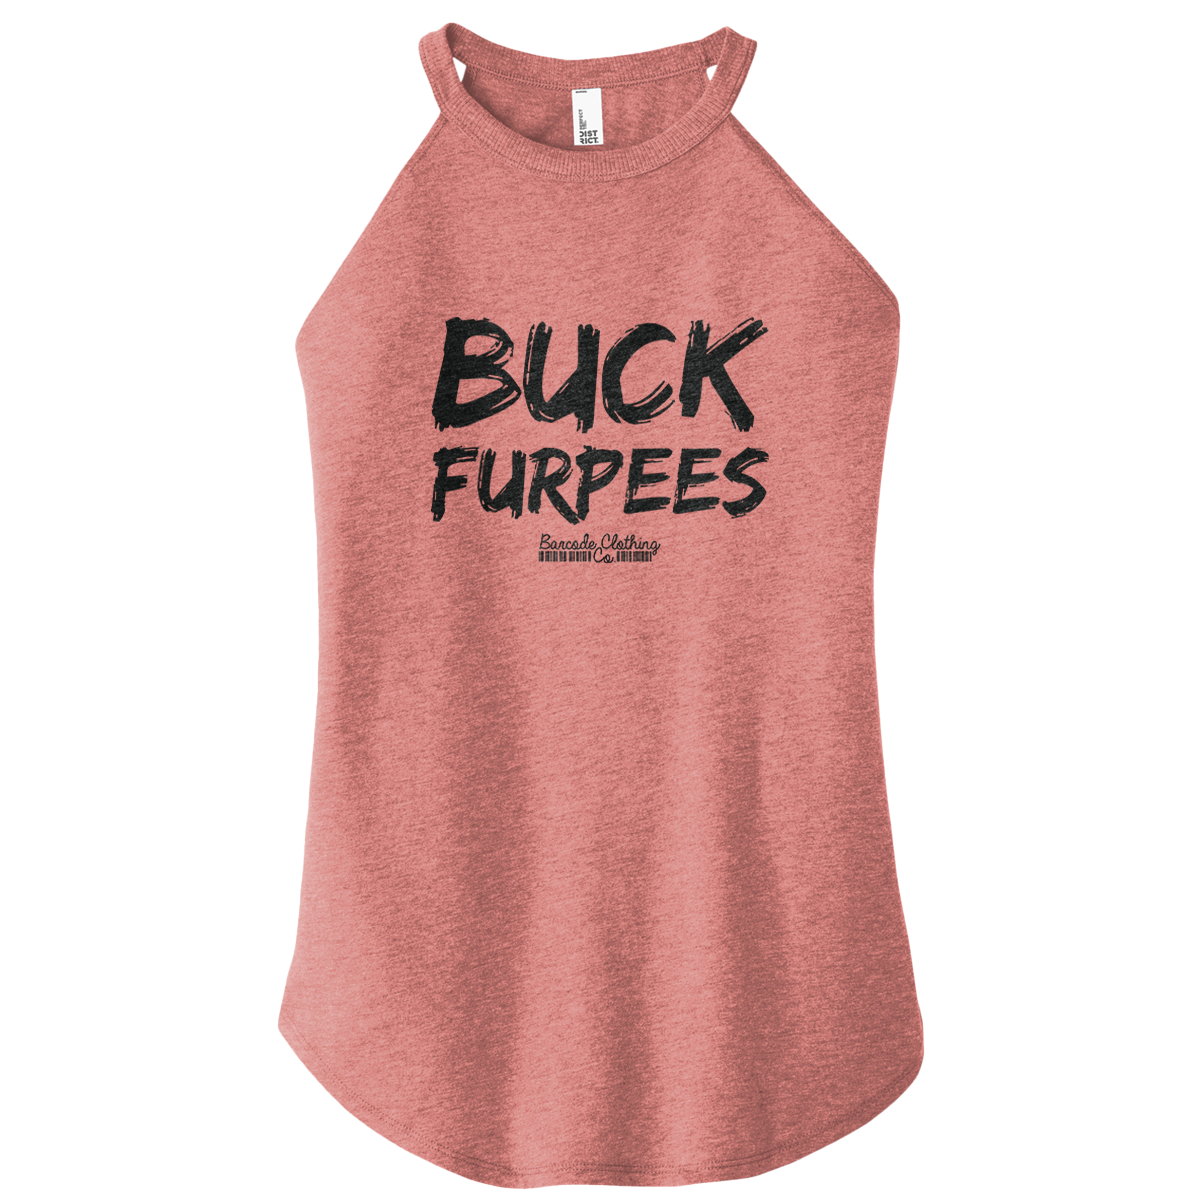 Buck Furpees Rocker Tank